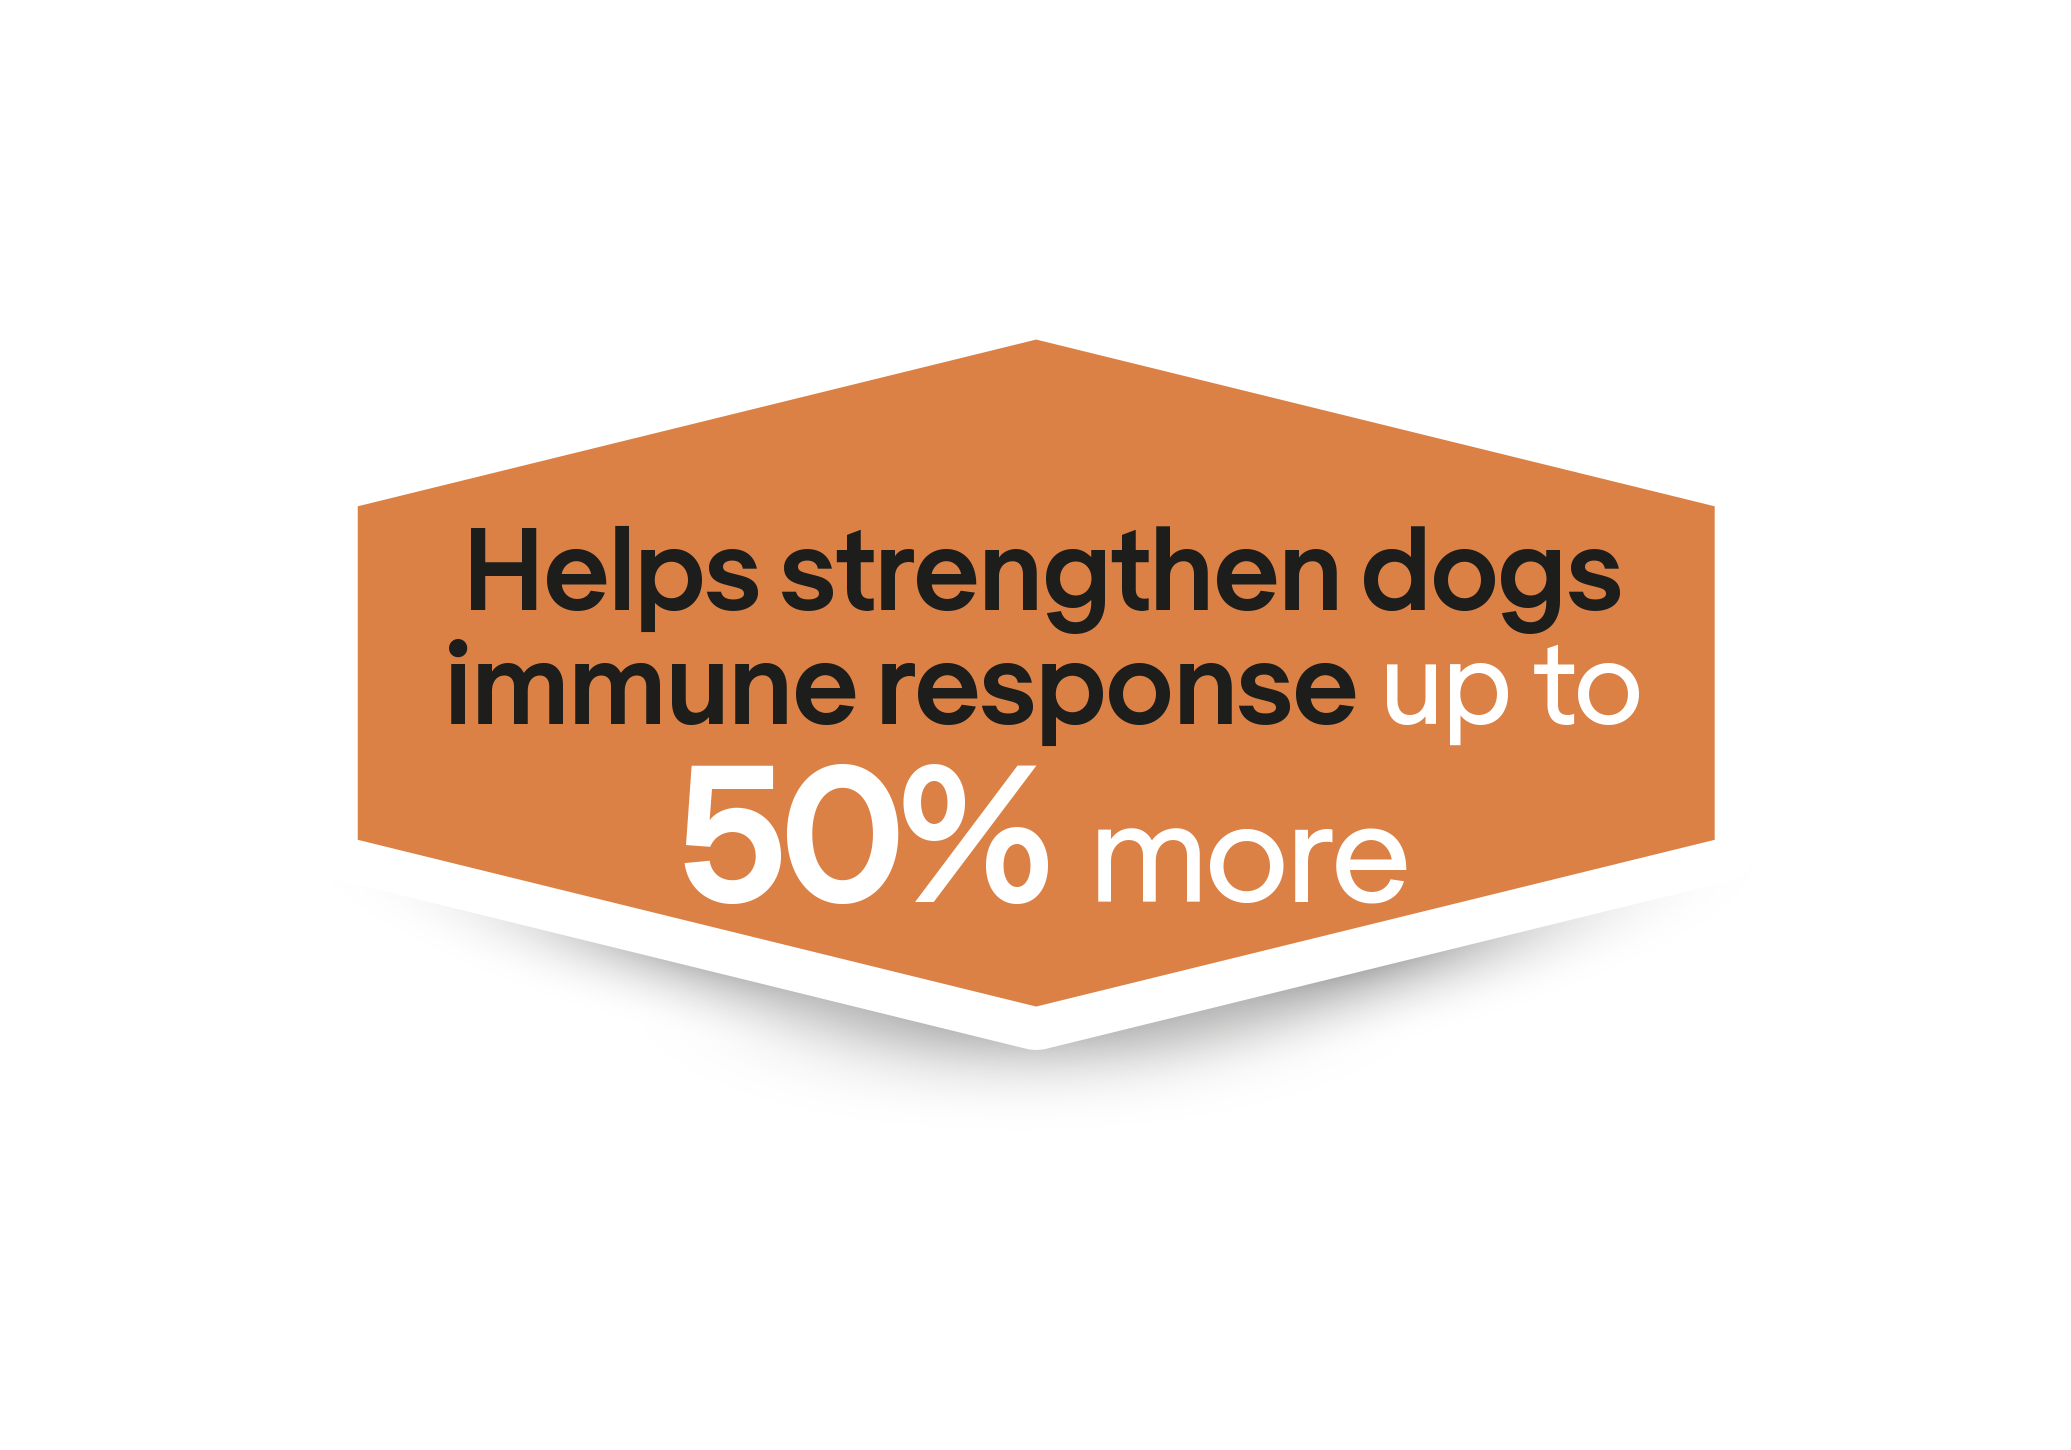  Ayuda a reforzar la respuesta inmunitaria de los perros hasta un 50% más